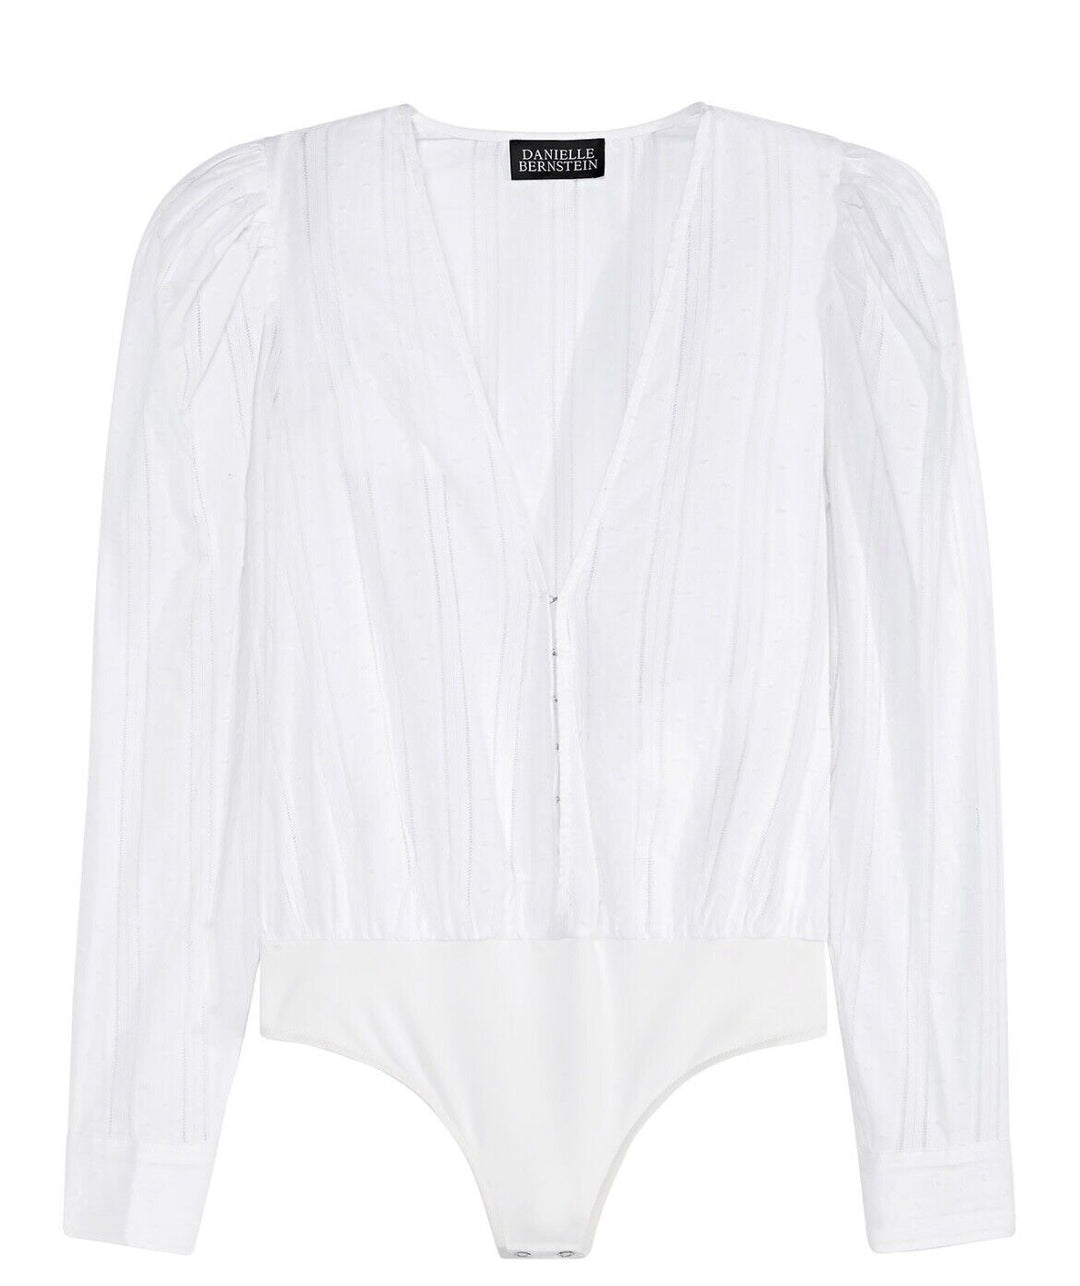 Danielle Bernstein Women's Puff Sleeve Cotton Bodysuit White Size XL